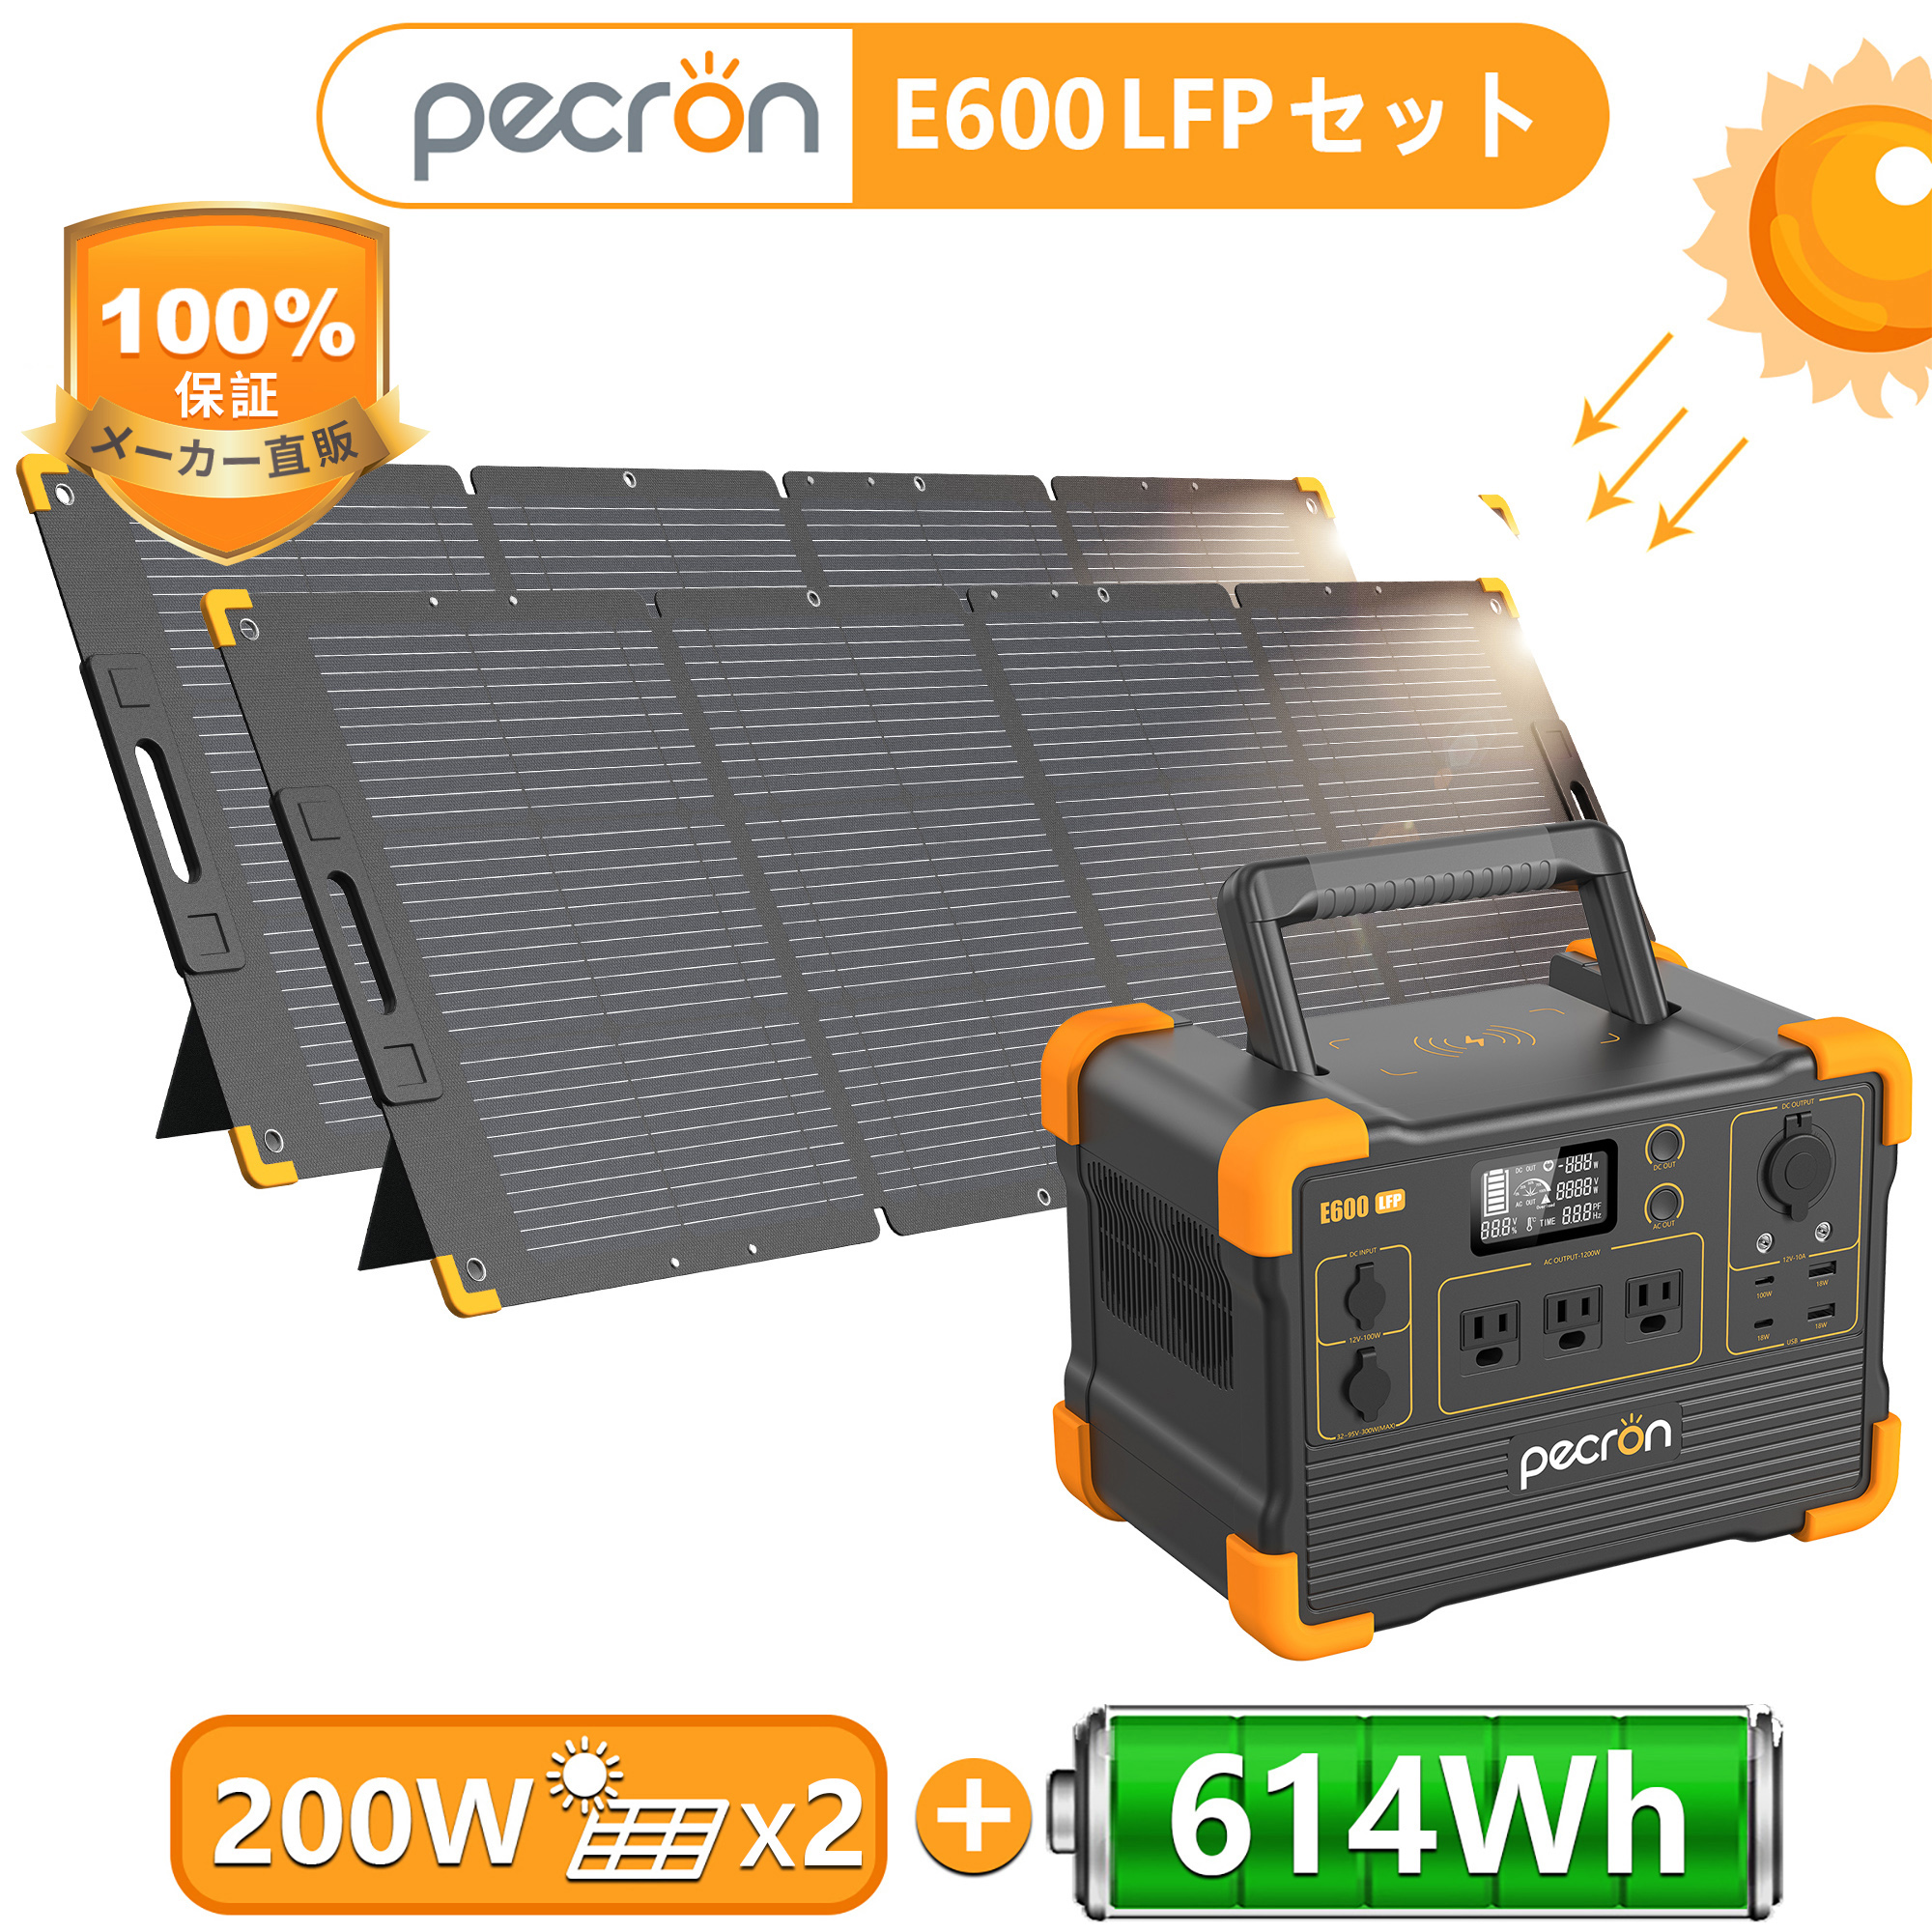 Pecron E600LFP ポータブル電源 - アウトドア